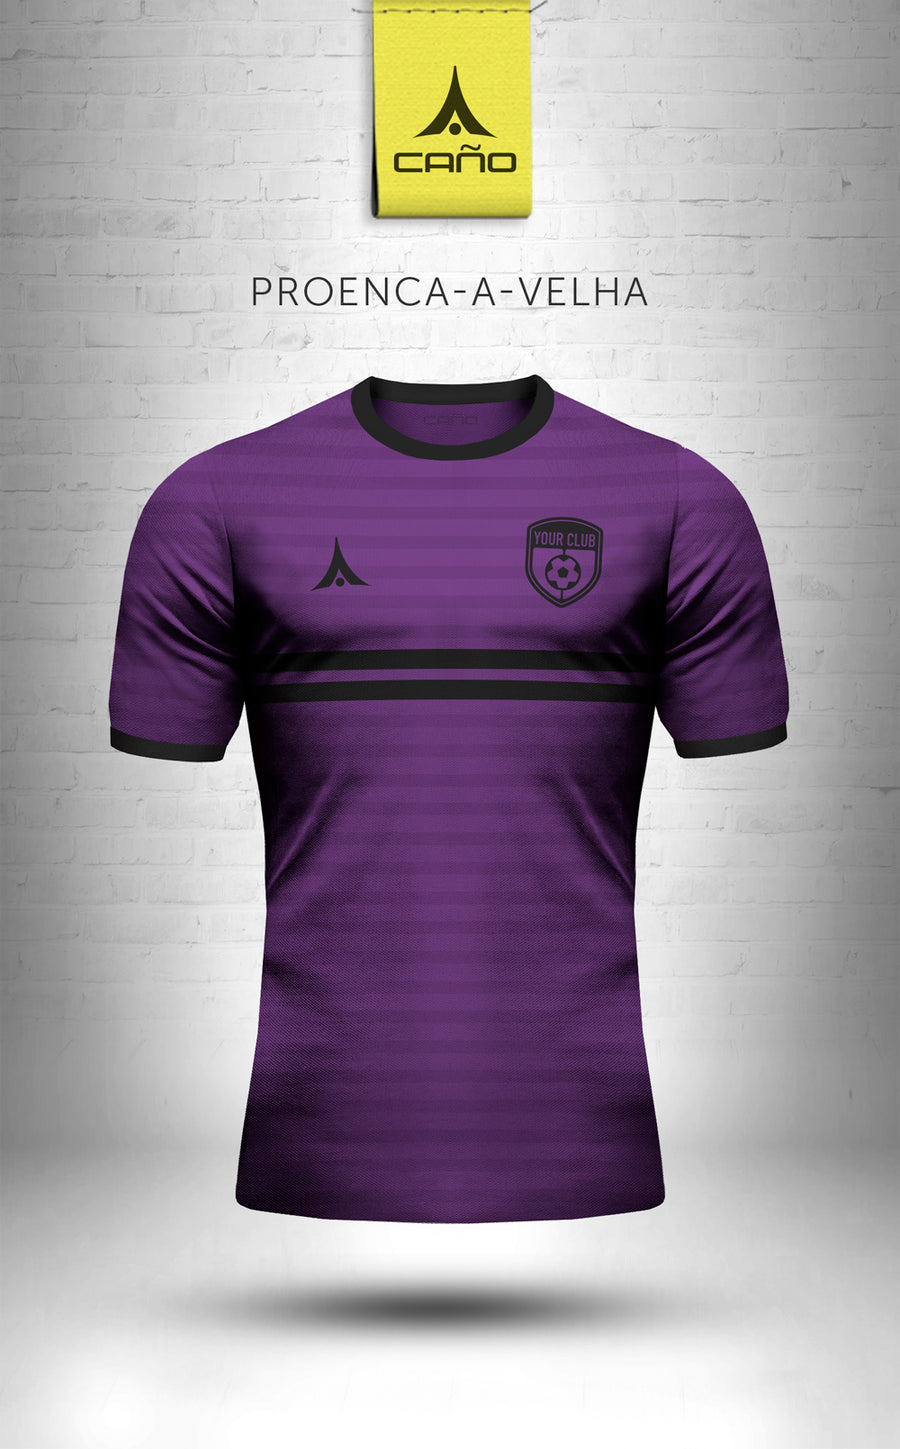 Proenca-a-Velha in purple/black